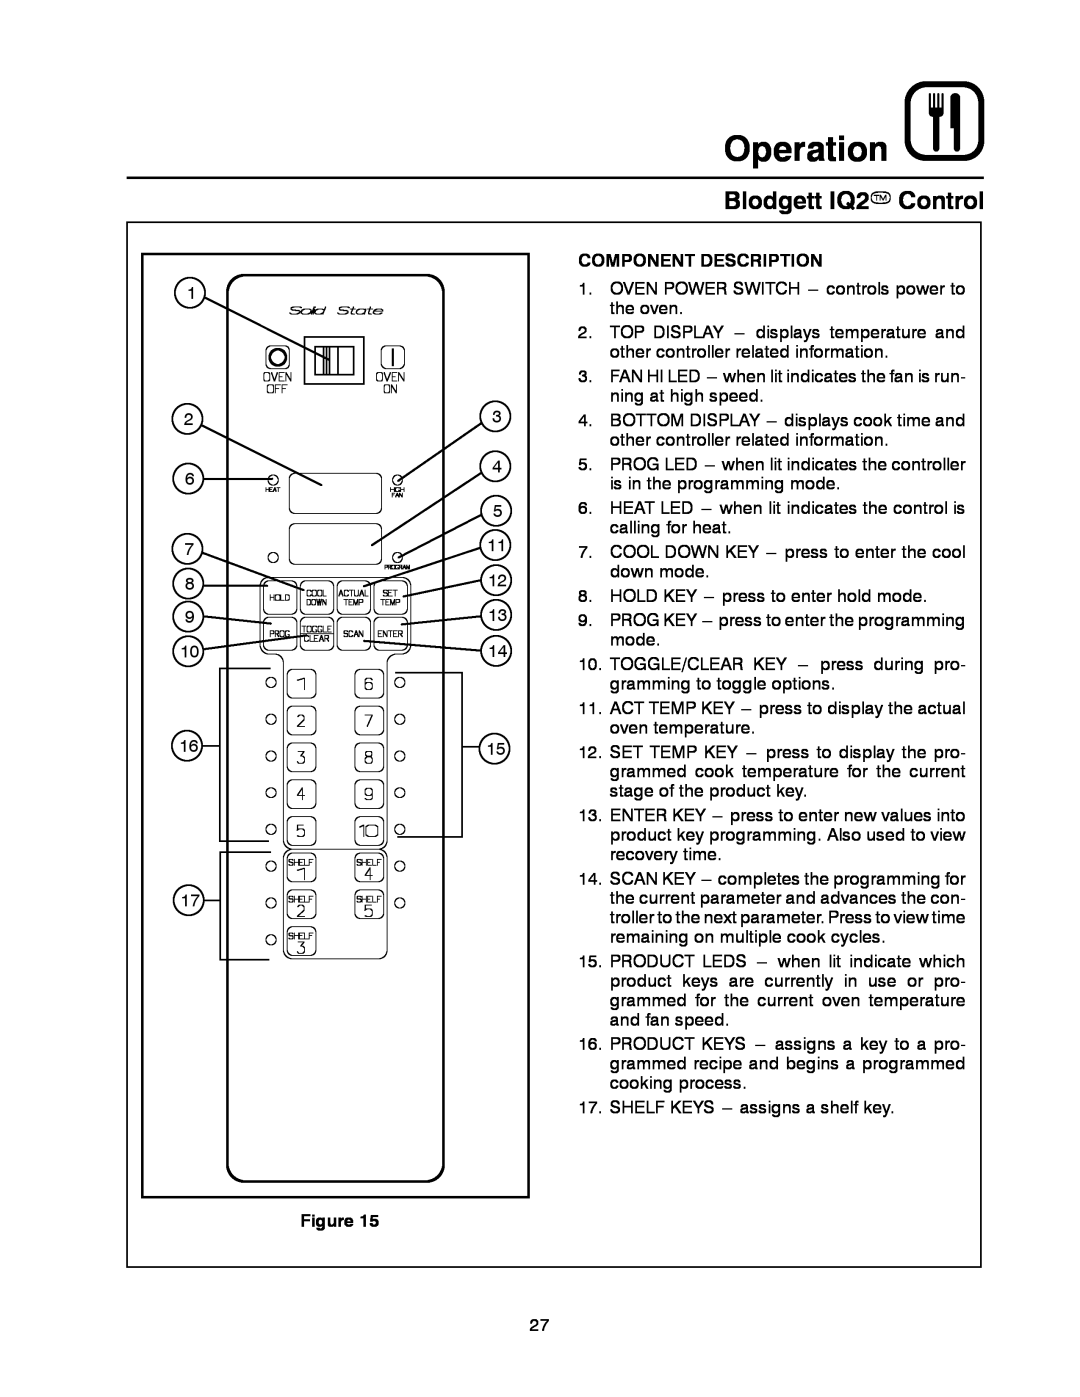 Blodgett DFG-50 manual Blodgett IQ2T Control, Operation, Component Description 